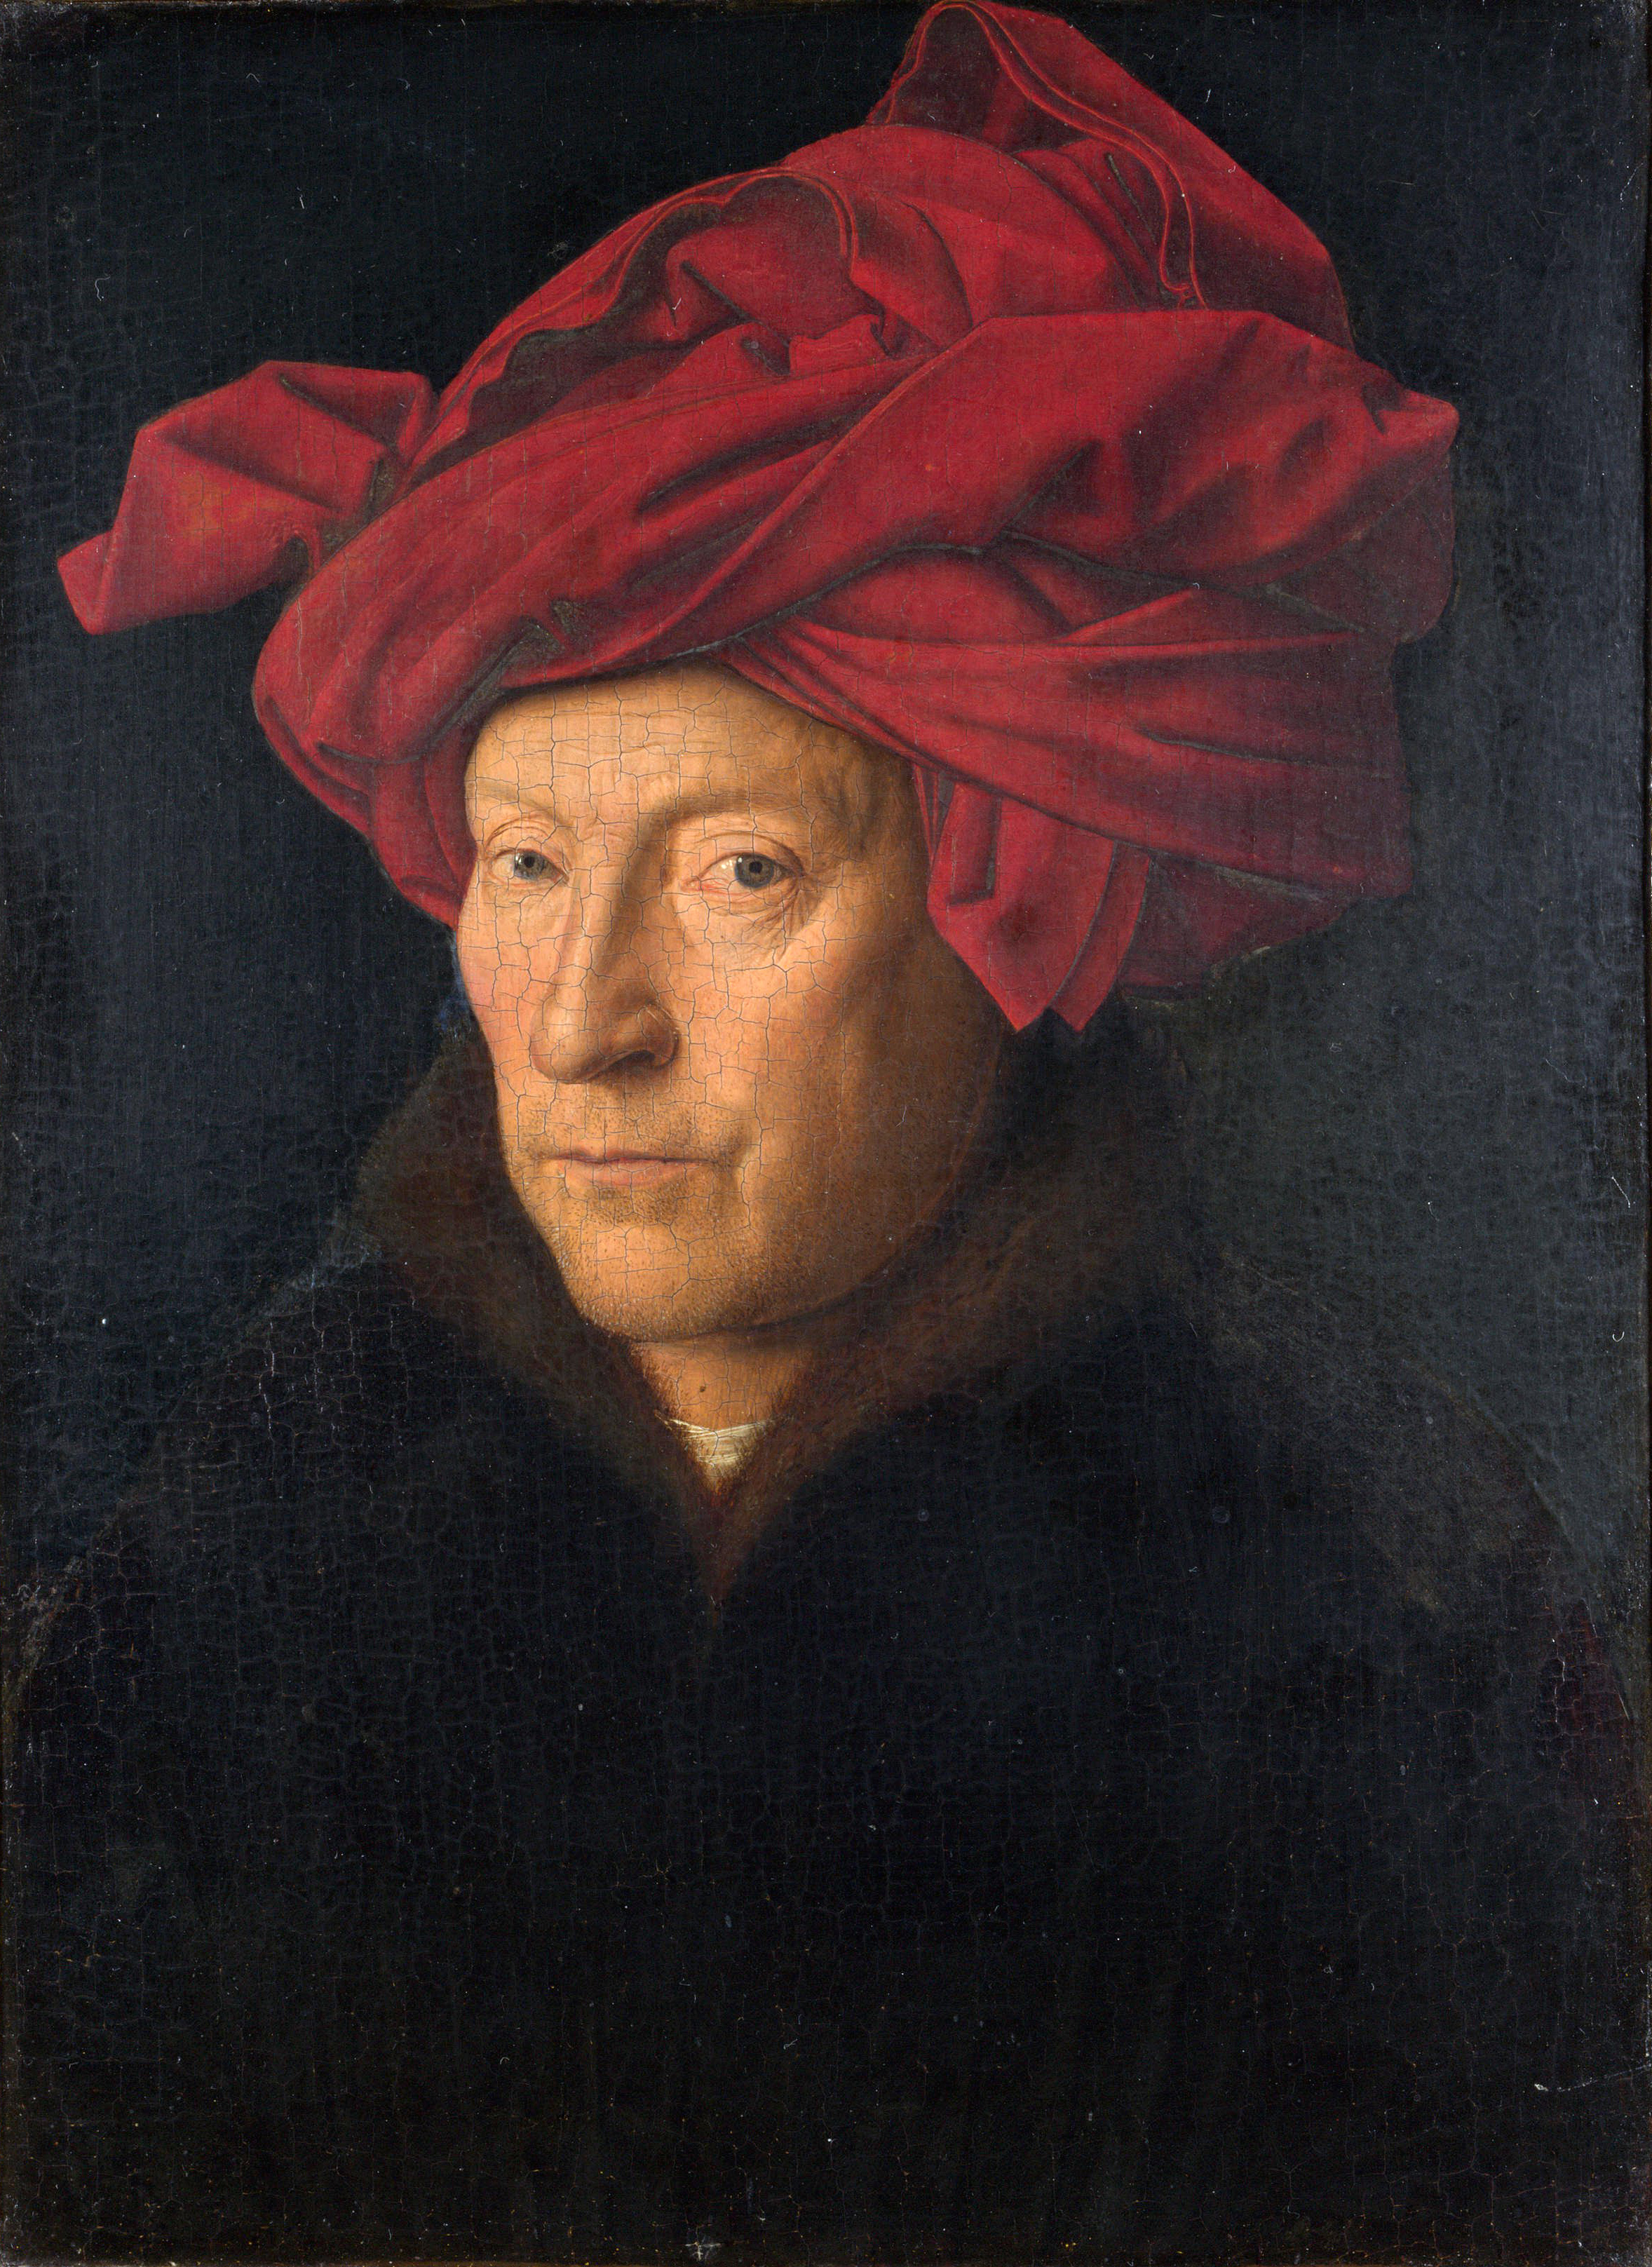 Porträt eines Mannes (Selbstporträt?) by Jan van Eyck - 1433 - 26 × 19 cm National Gallery